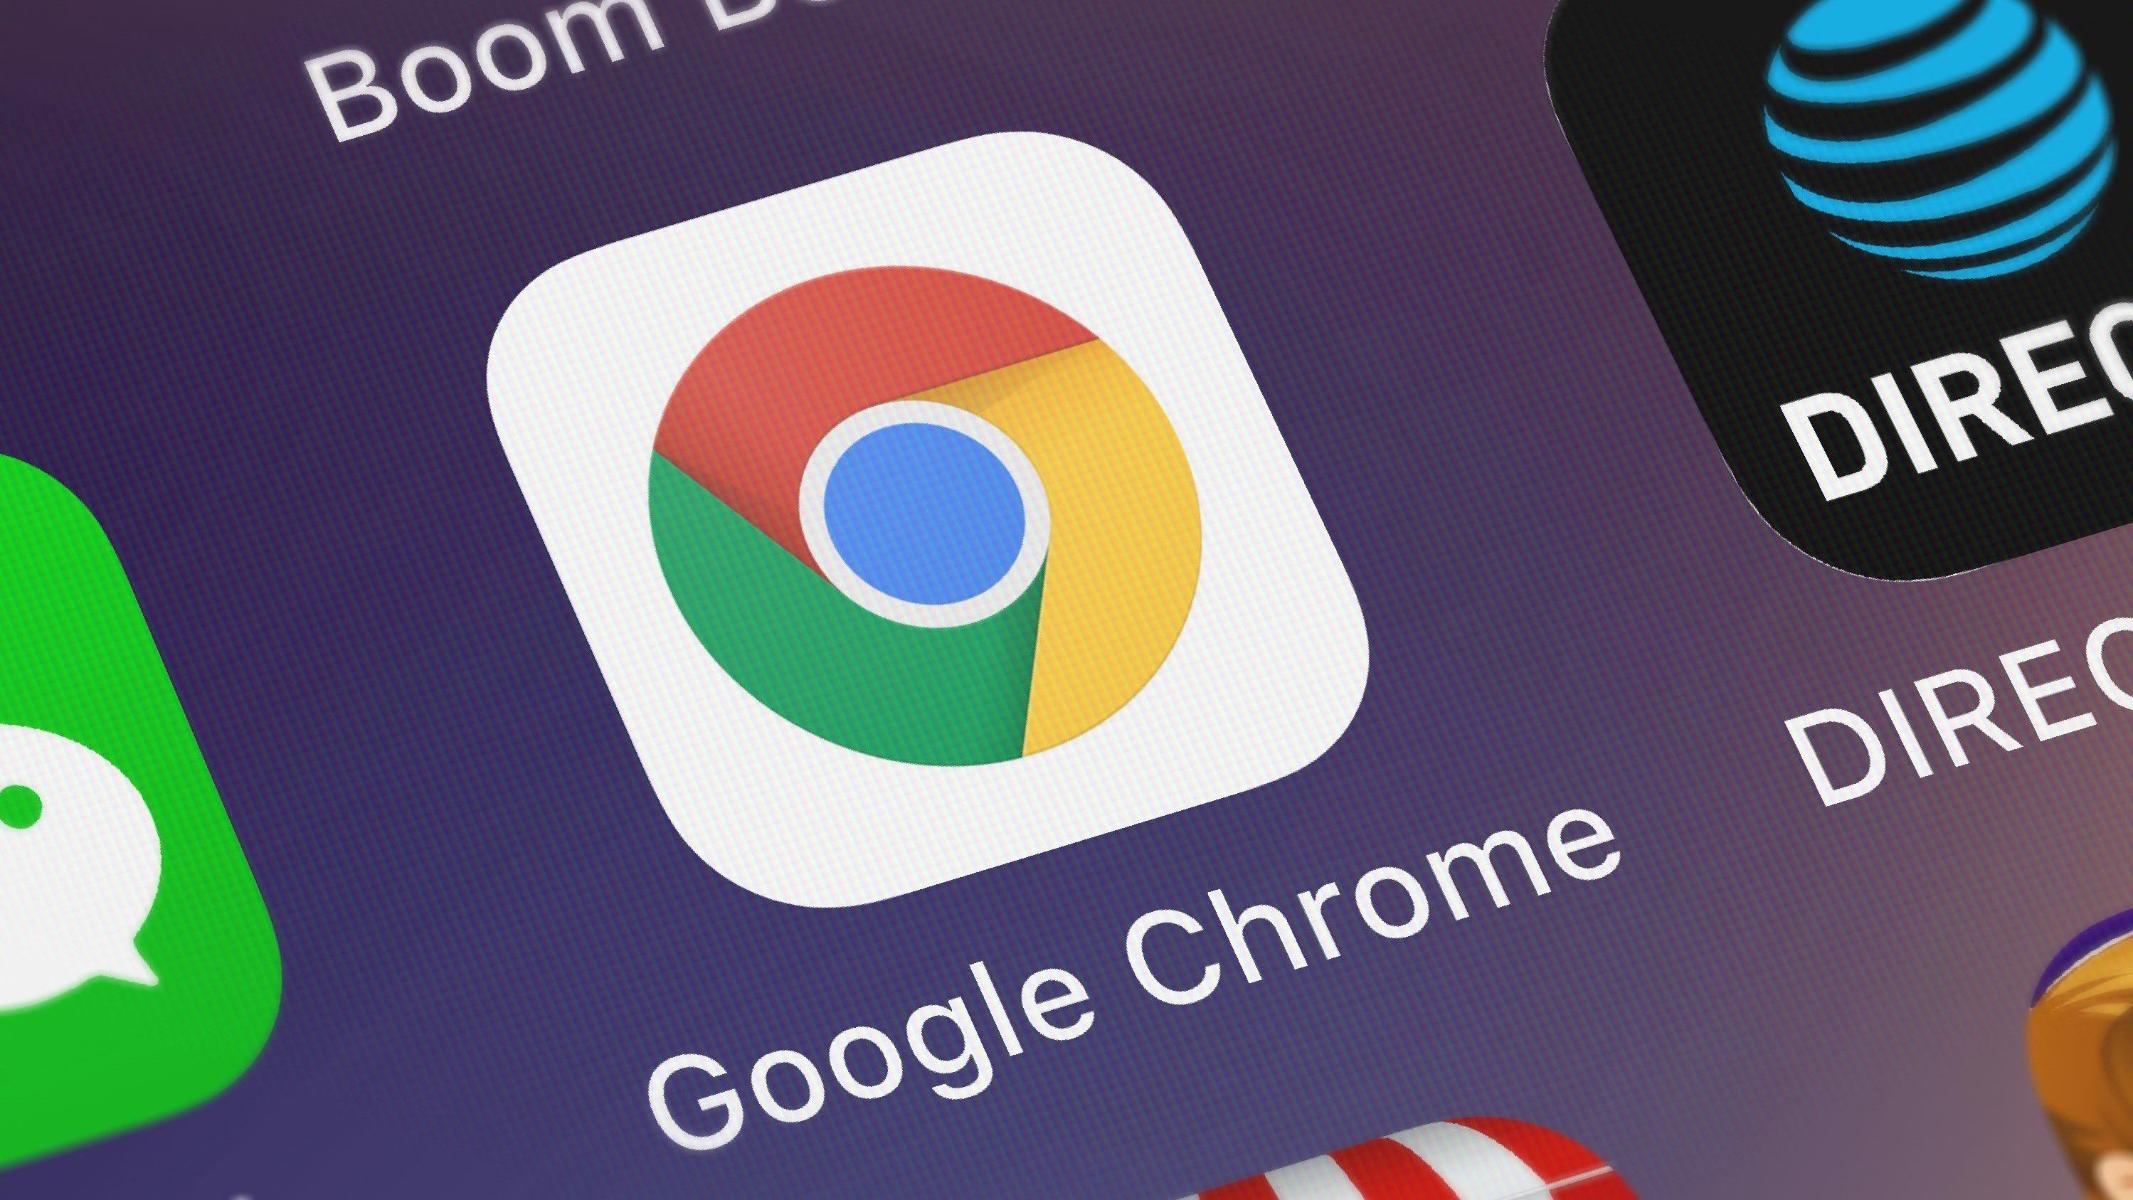 Google Chrome para Android pronto permitirá copiar y guardar fotogramas de vídeos